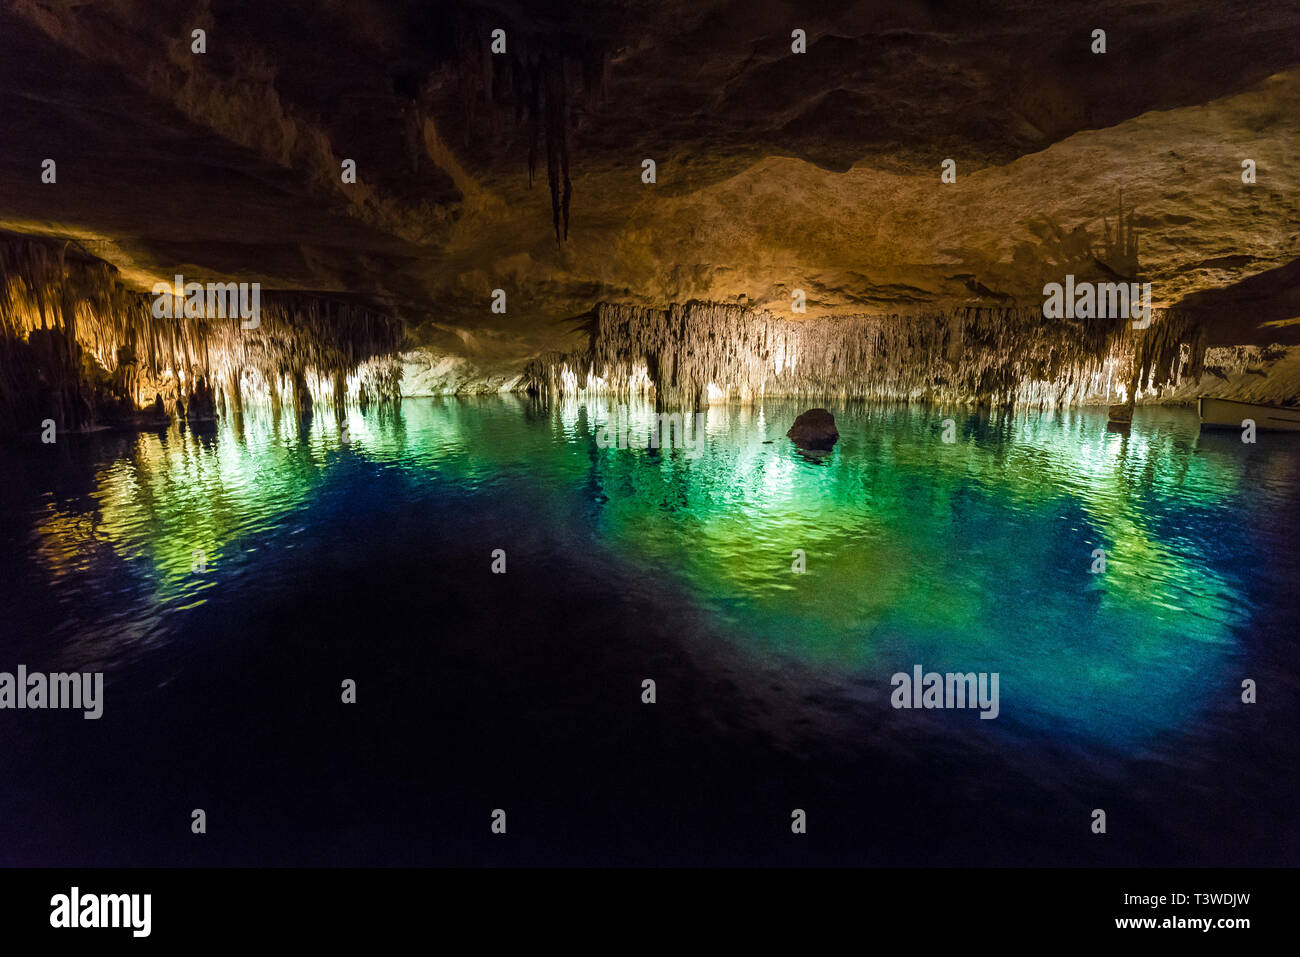 Famous cave "Cuevas del Drach" (Dragon cave) on spanish island Mallorca  Drach Caves in Porto Cristo Stock Photo - Alamy